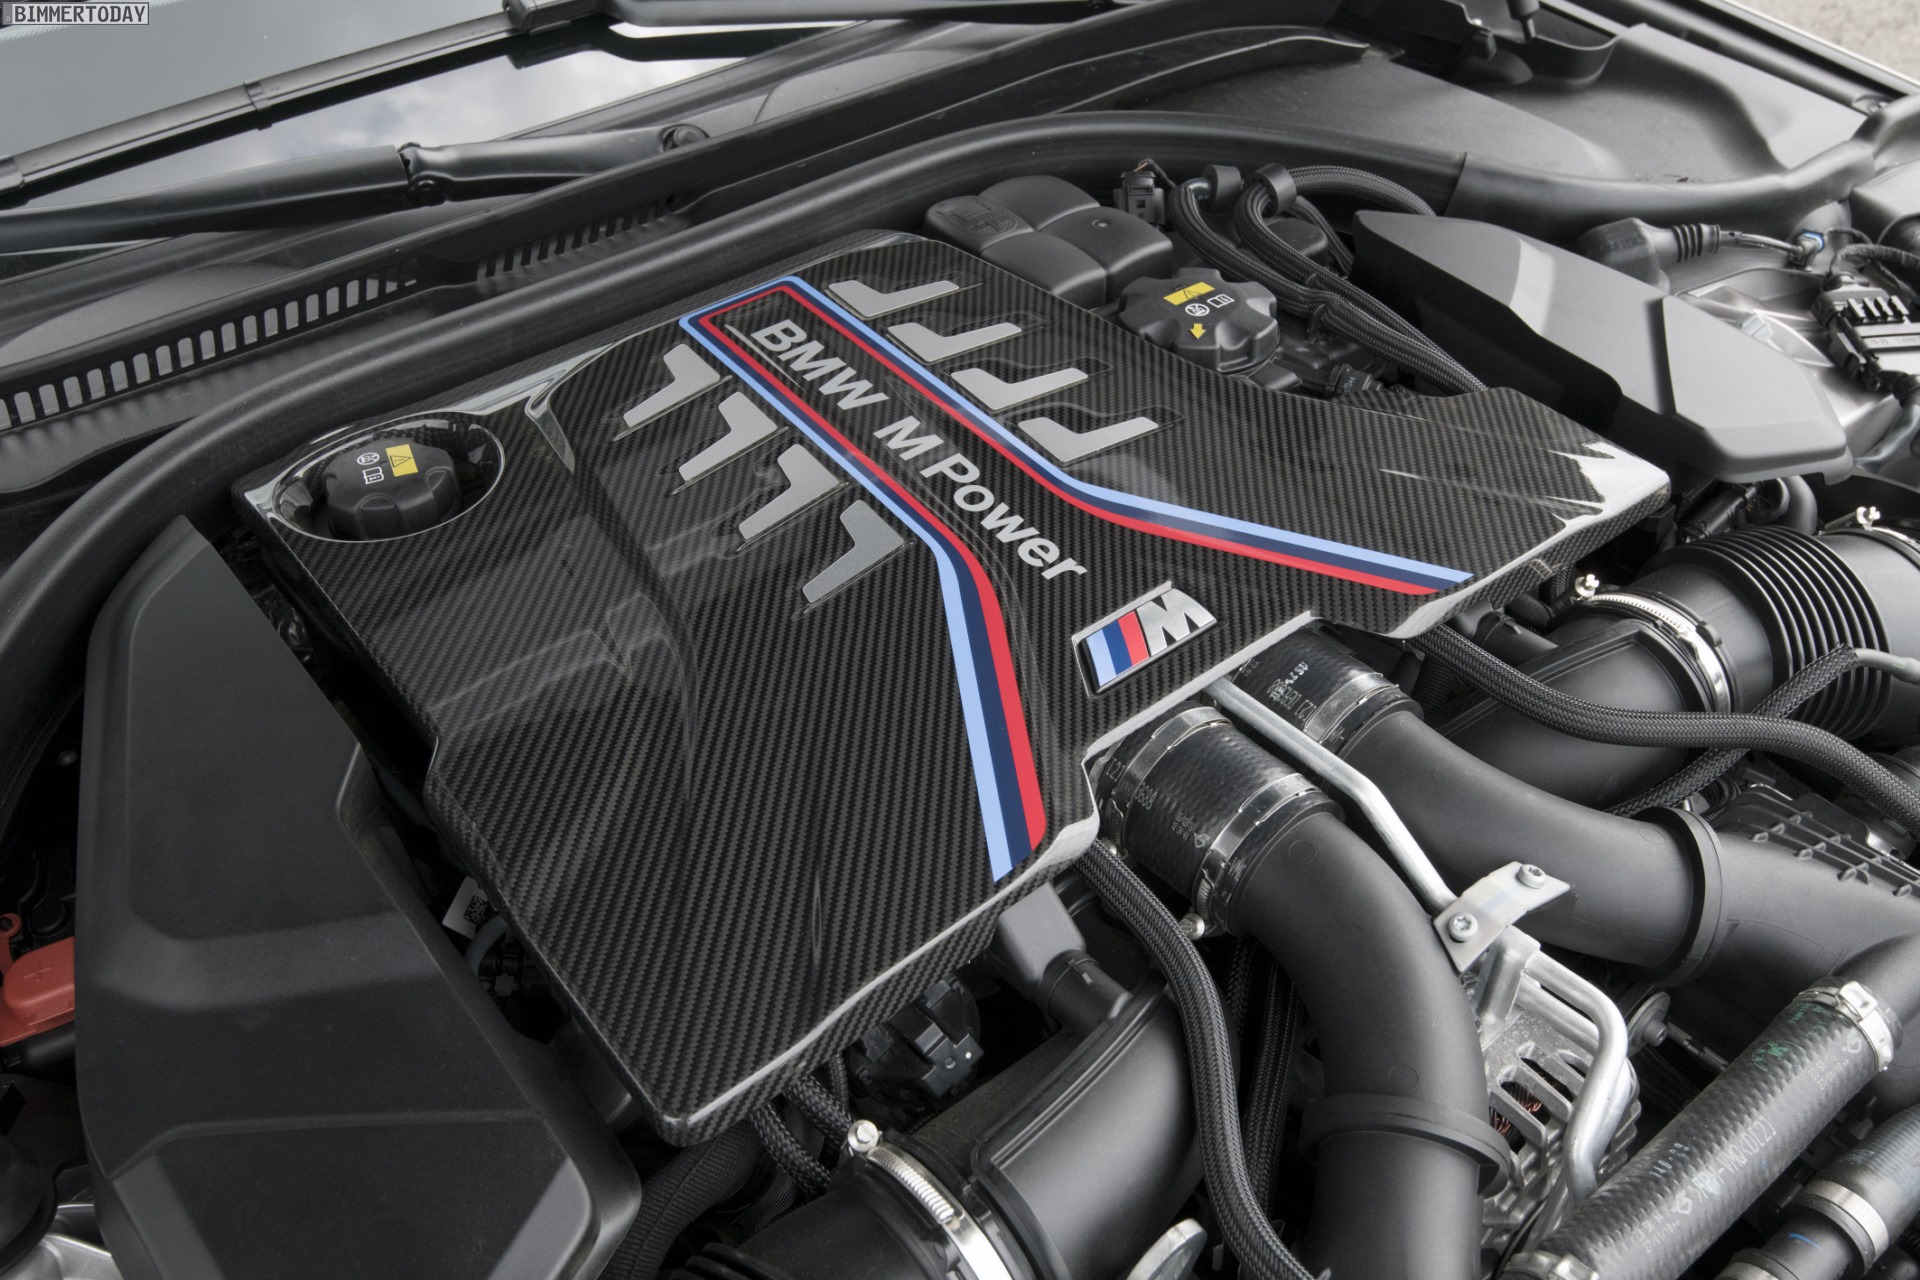 Neuer F-Type 2020: Erster Jaguar mit BMW V8-Motor?